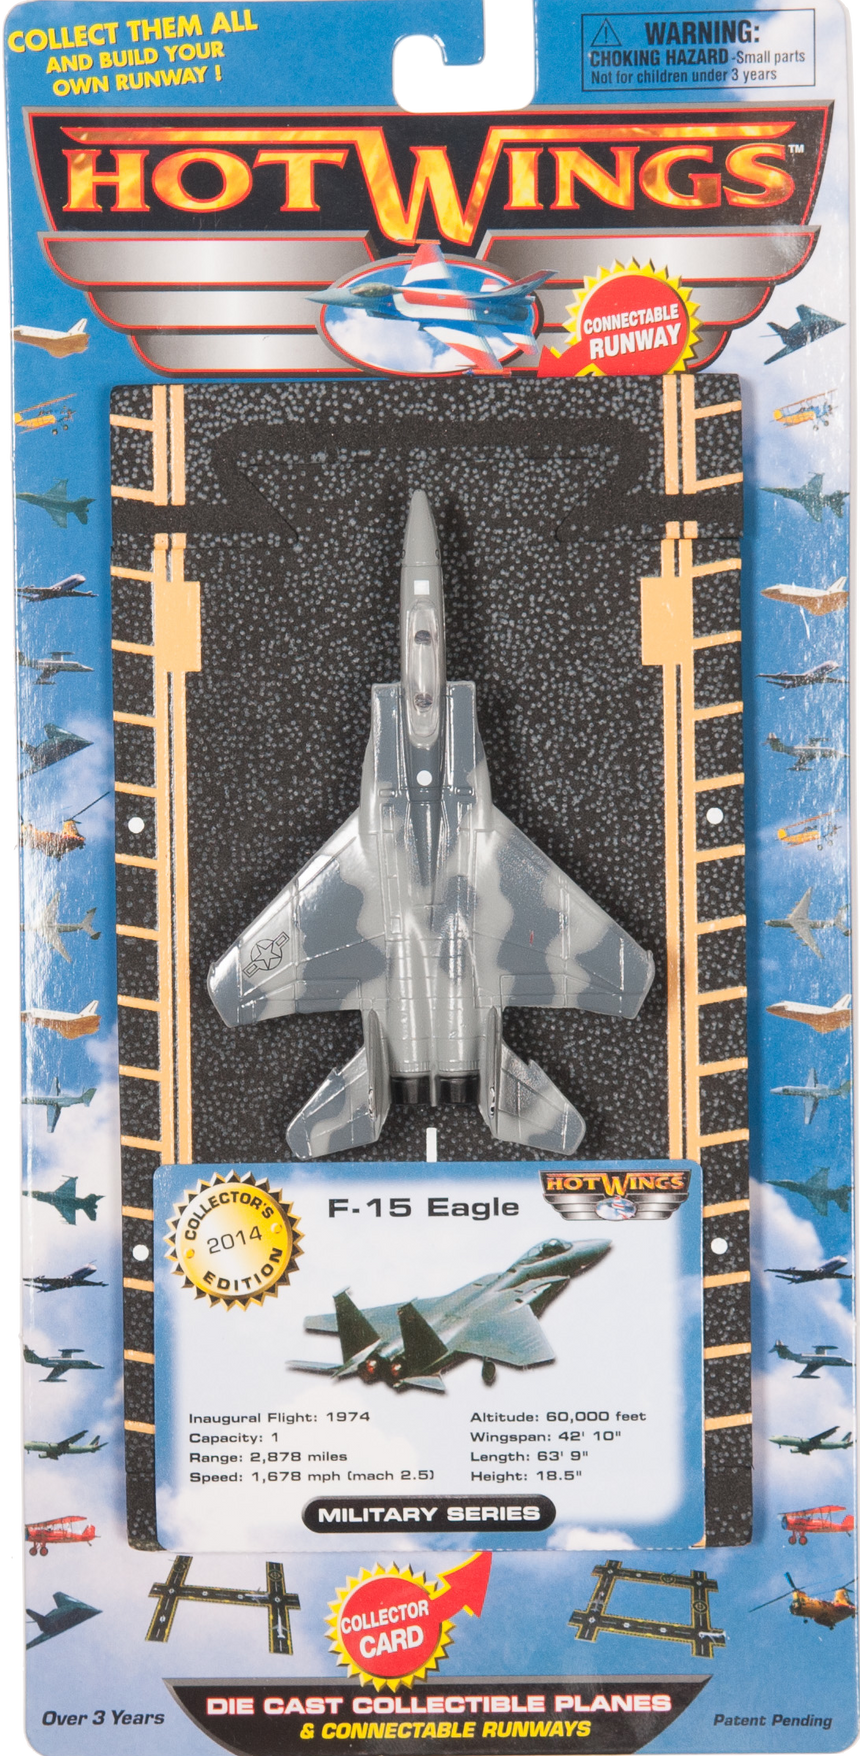 F-15 Eagle (military markings)